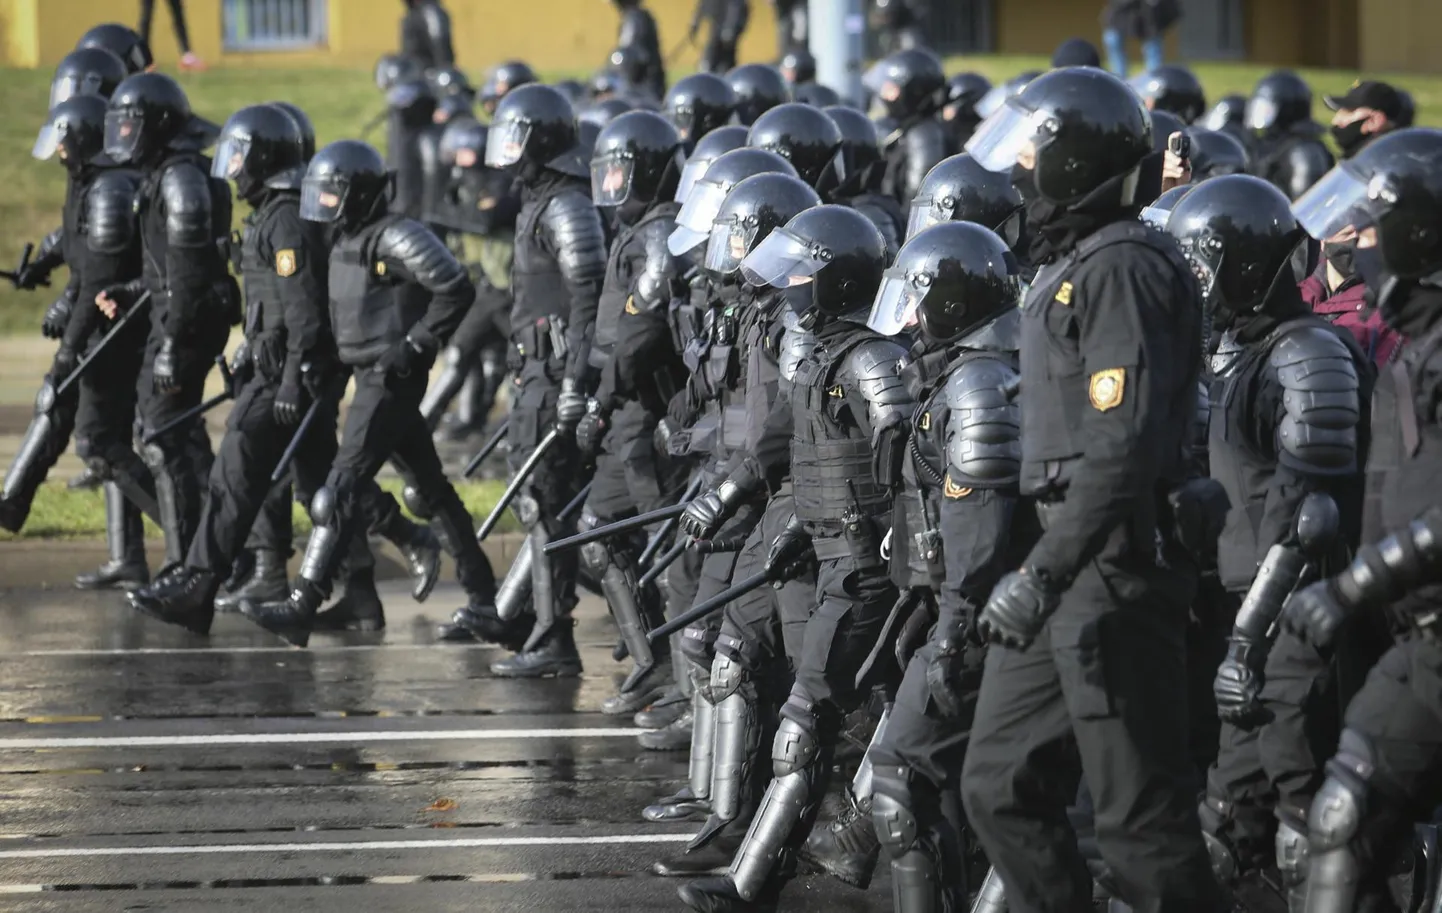 Oktoobris 2020 takistas sõjaväepolitsei Minskis rahval presidendi vastu protesteerimiseks koguneda.